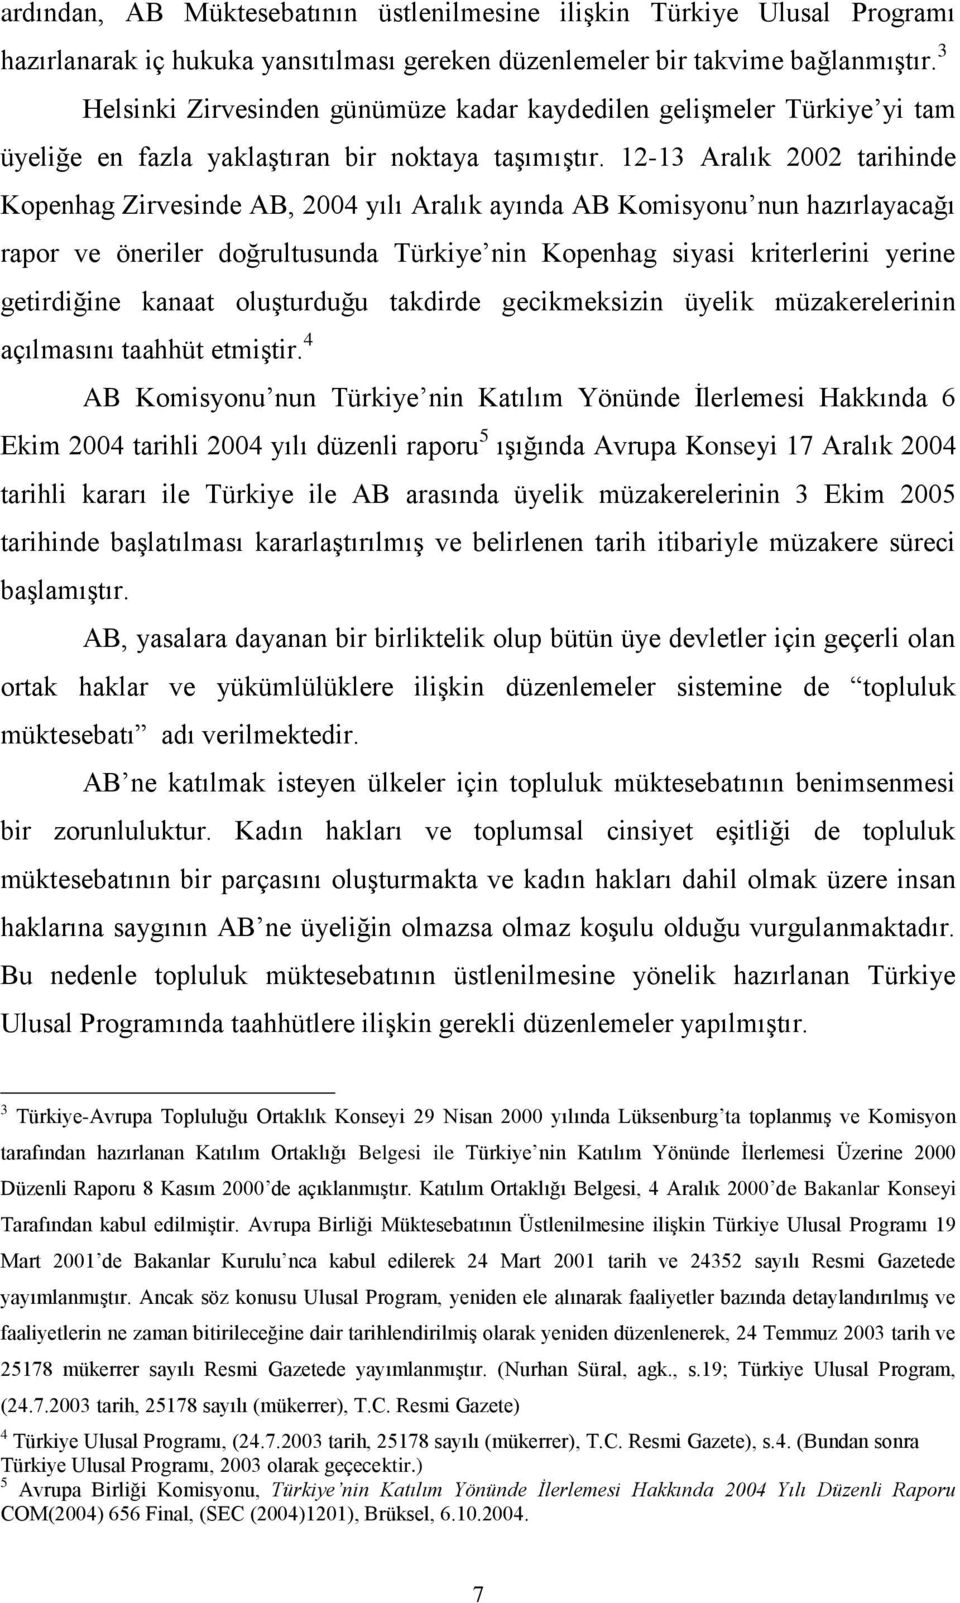 12-13 Aralık 2002 tarihinde Kopenhag Zirvesinde AB, 2004 yılı Aralık ayında AB Komisyonu nun hazırlayacağı rapor ve öneriler doğrultusunda Türkiye nin Kopenhag siyasi kriterlerini yerine getirdiğine